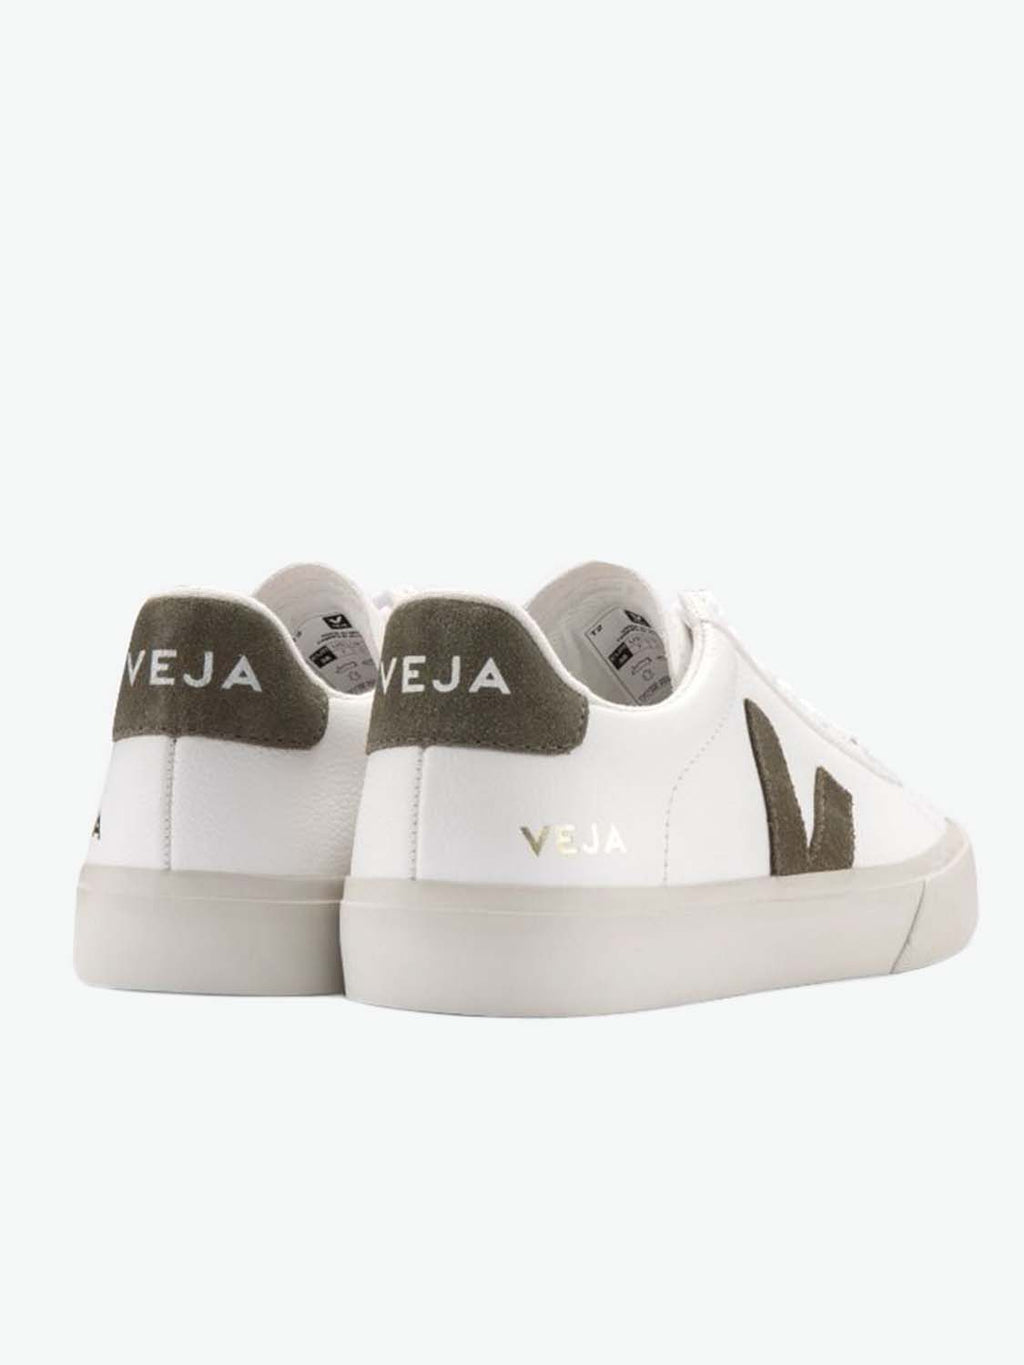 Veja Campo Leather White Khaki Sneakers